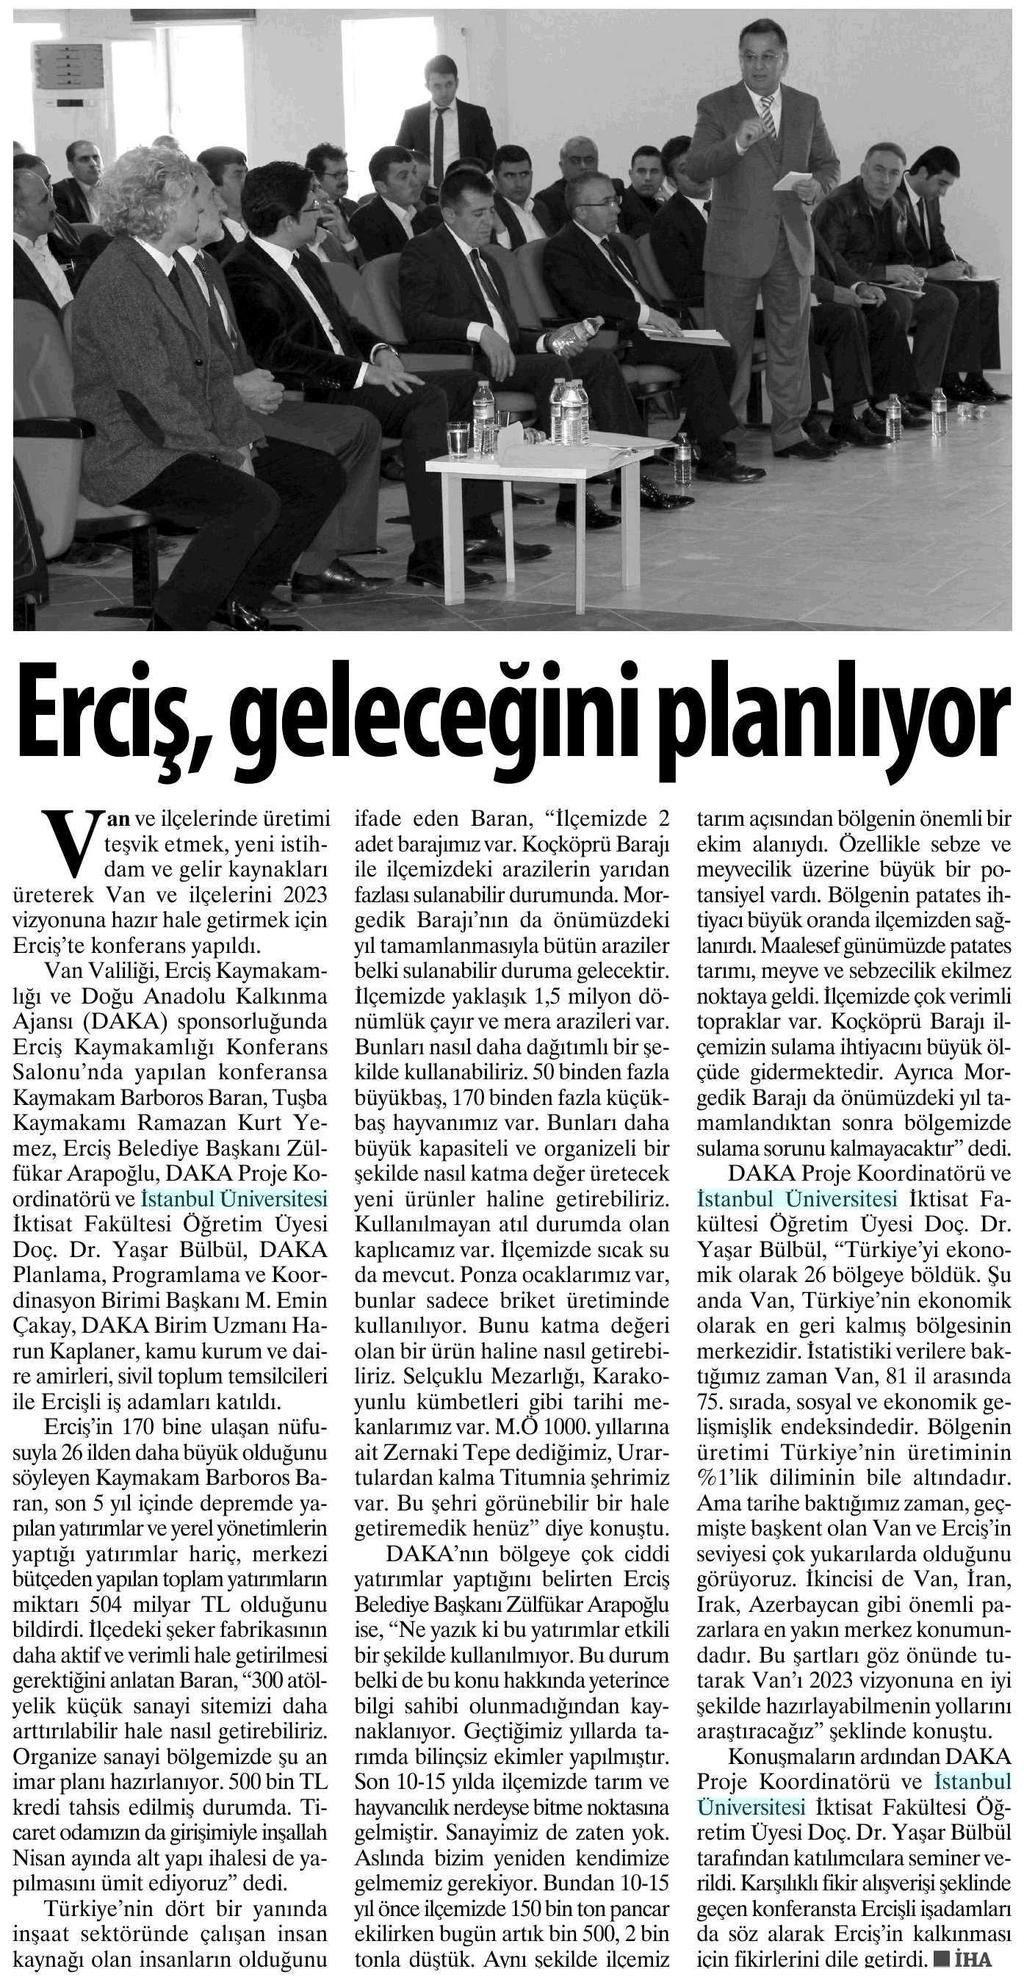 ERCIS, GELECEGINI PLANLIYOR Yayın Adı : Erzurum Pusula Gazetesi Sayfa : 6